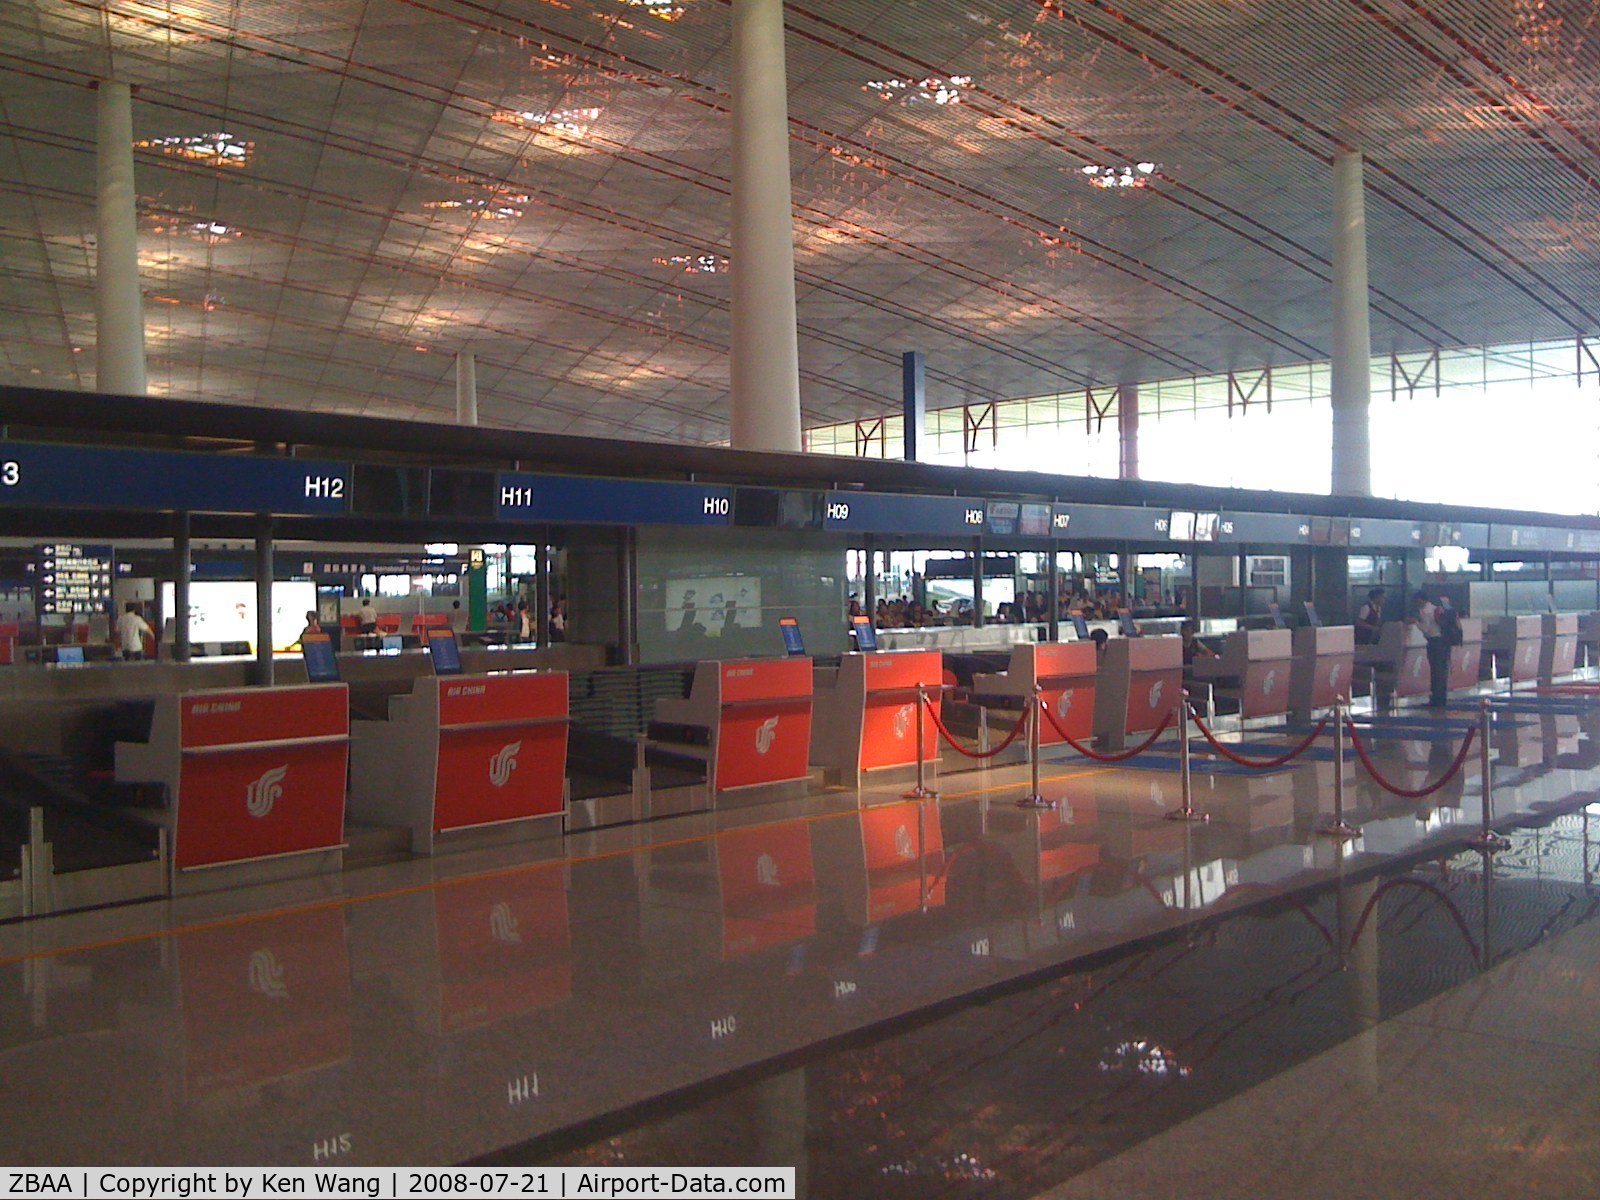 Beijing Capital International Airport, Beijing China (ZBAA) - New Terminal 3, Beijing Capital International Airport